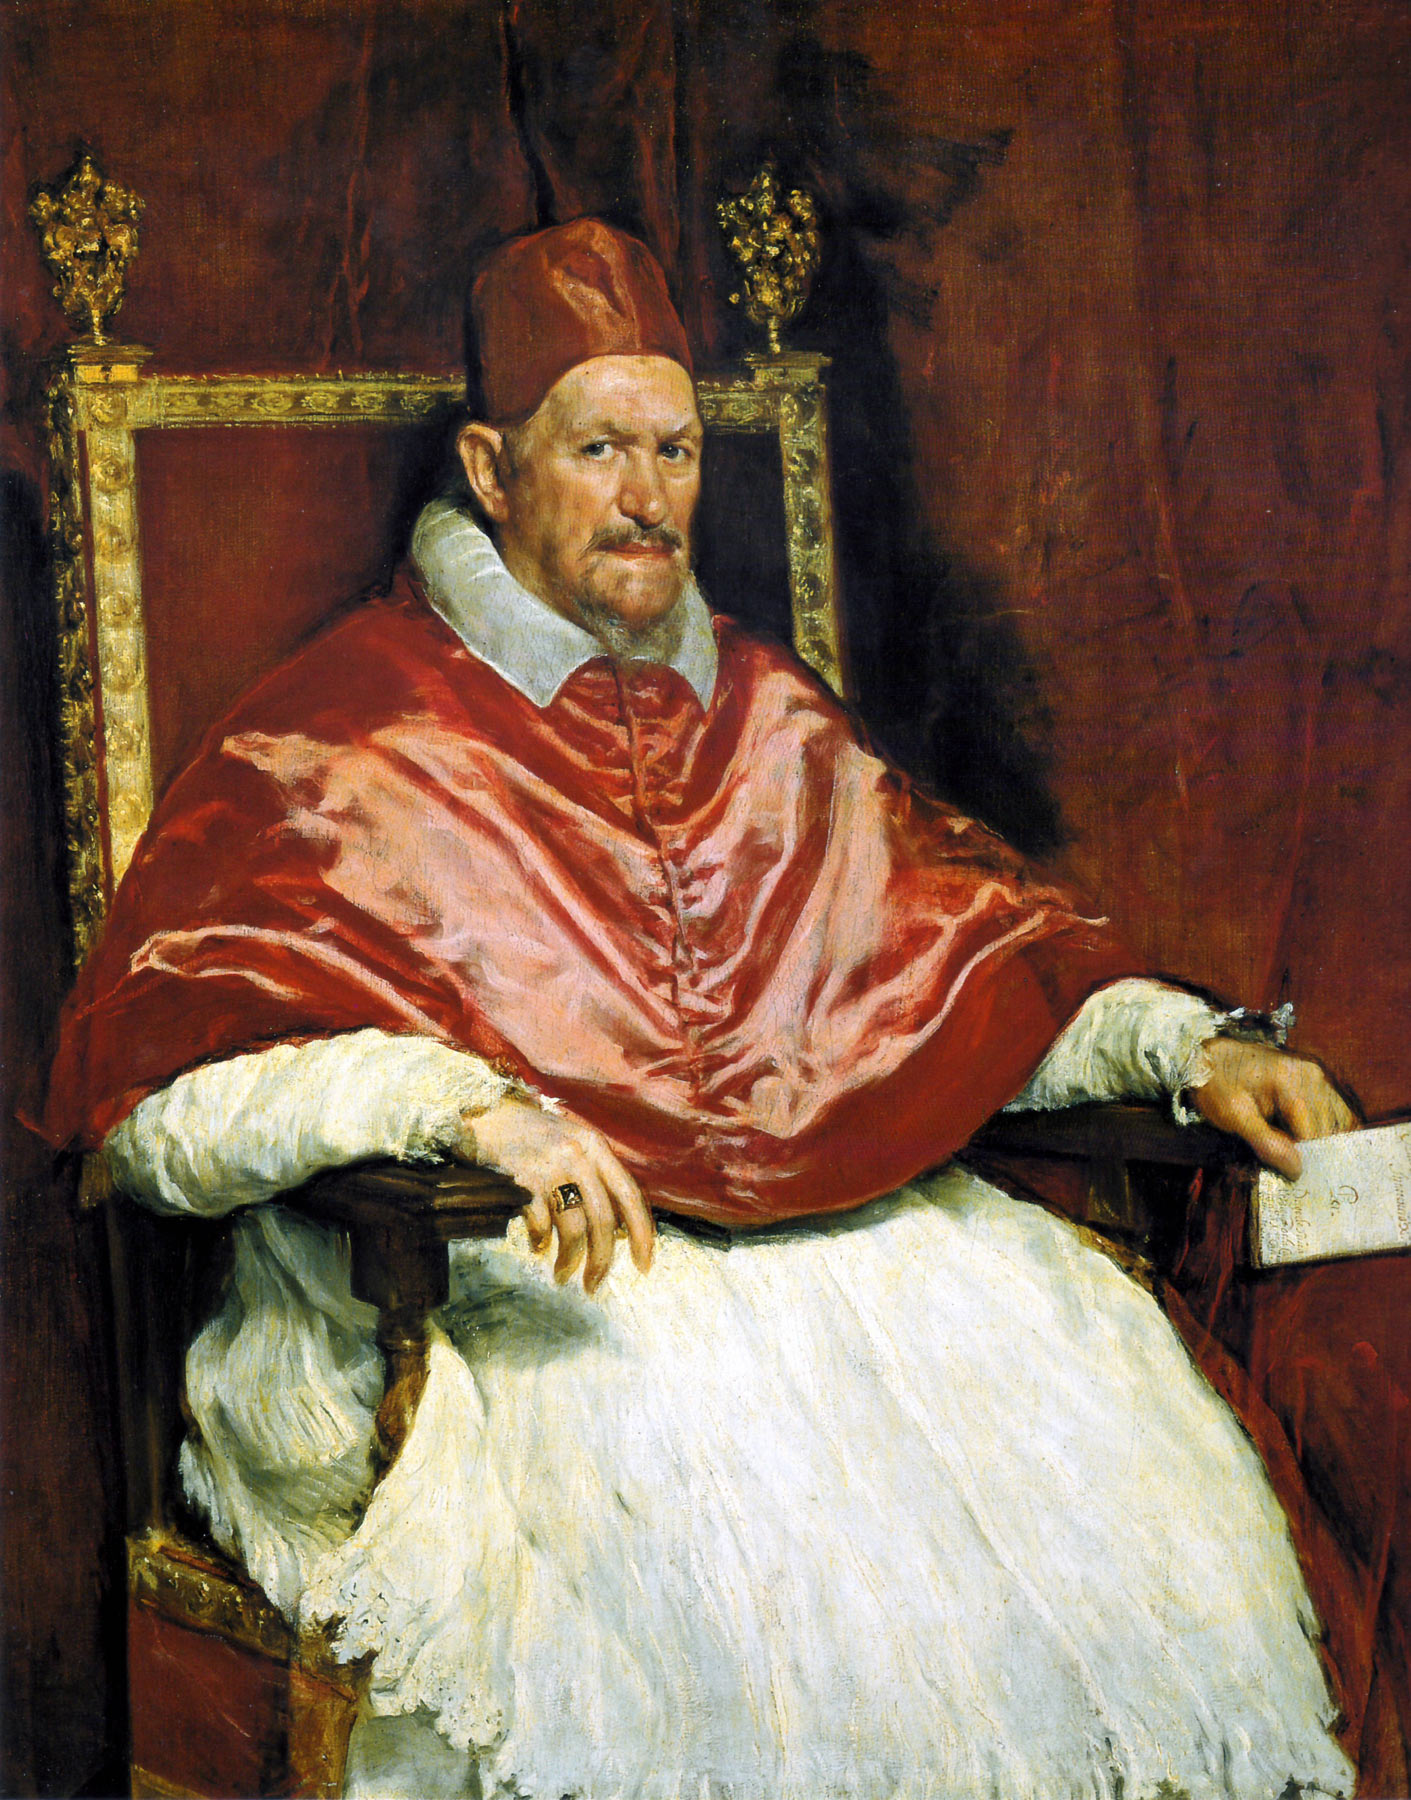 Diego VelÃ¡zquez, Ritratto di papa Innocenzo X (1650; olio su tela, 140 x 120 cm; Roma, Galleria Doria Pamphilj)
